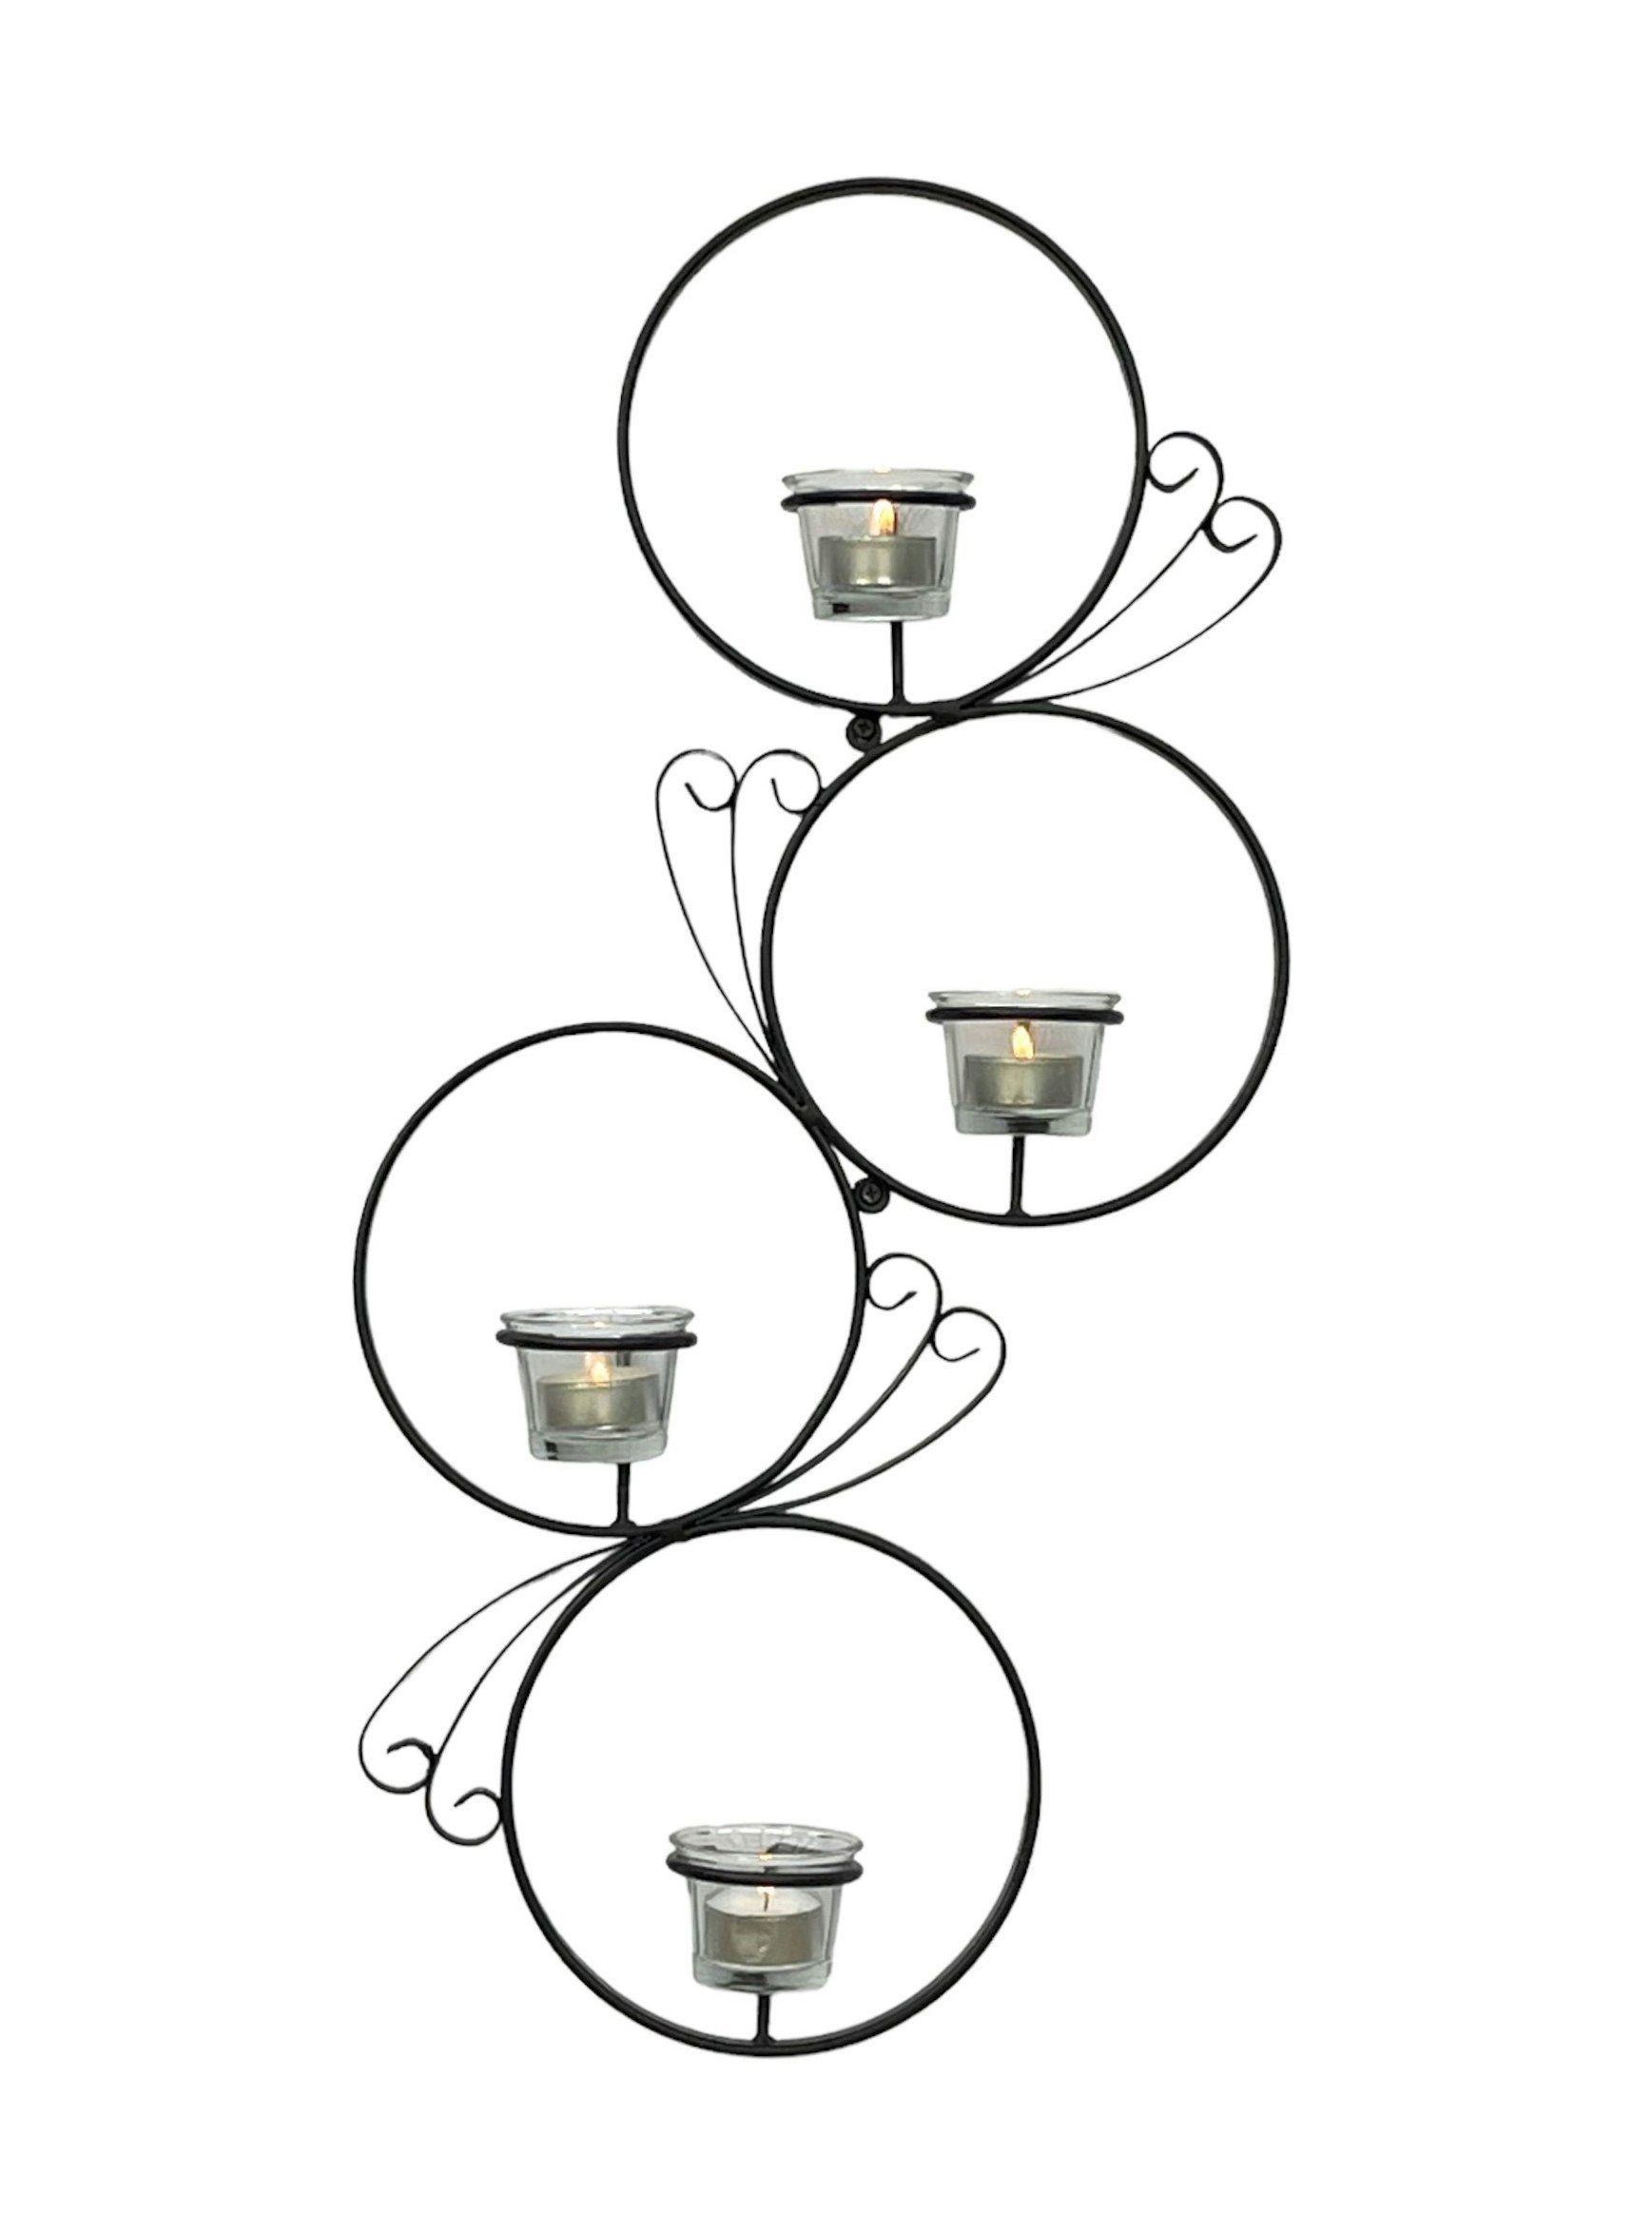 DanDiBo Teelichthalter Wandteelichthalter Metall Schwarz Rund Wandkerzenhalter 60cm Wand